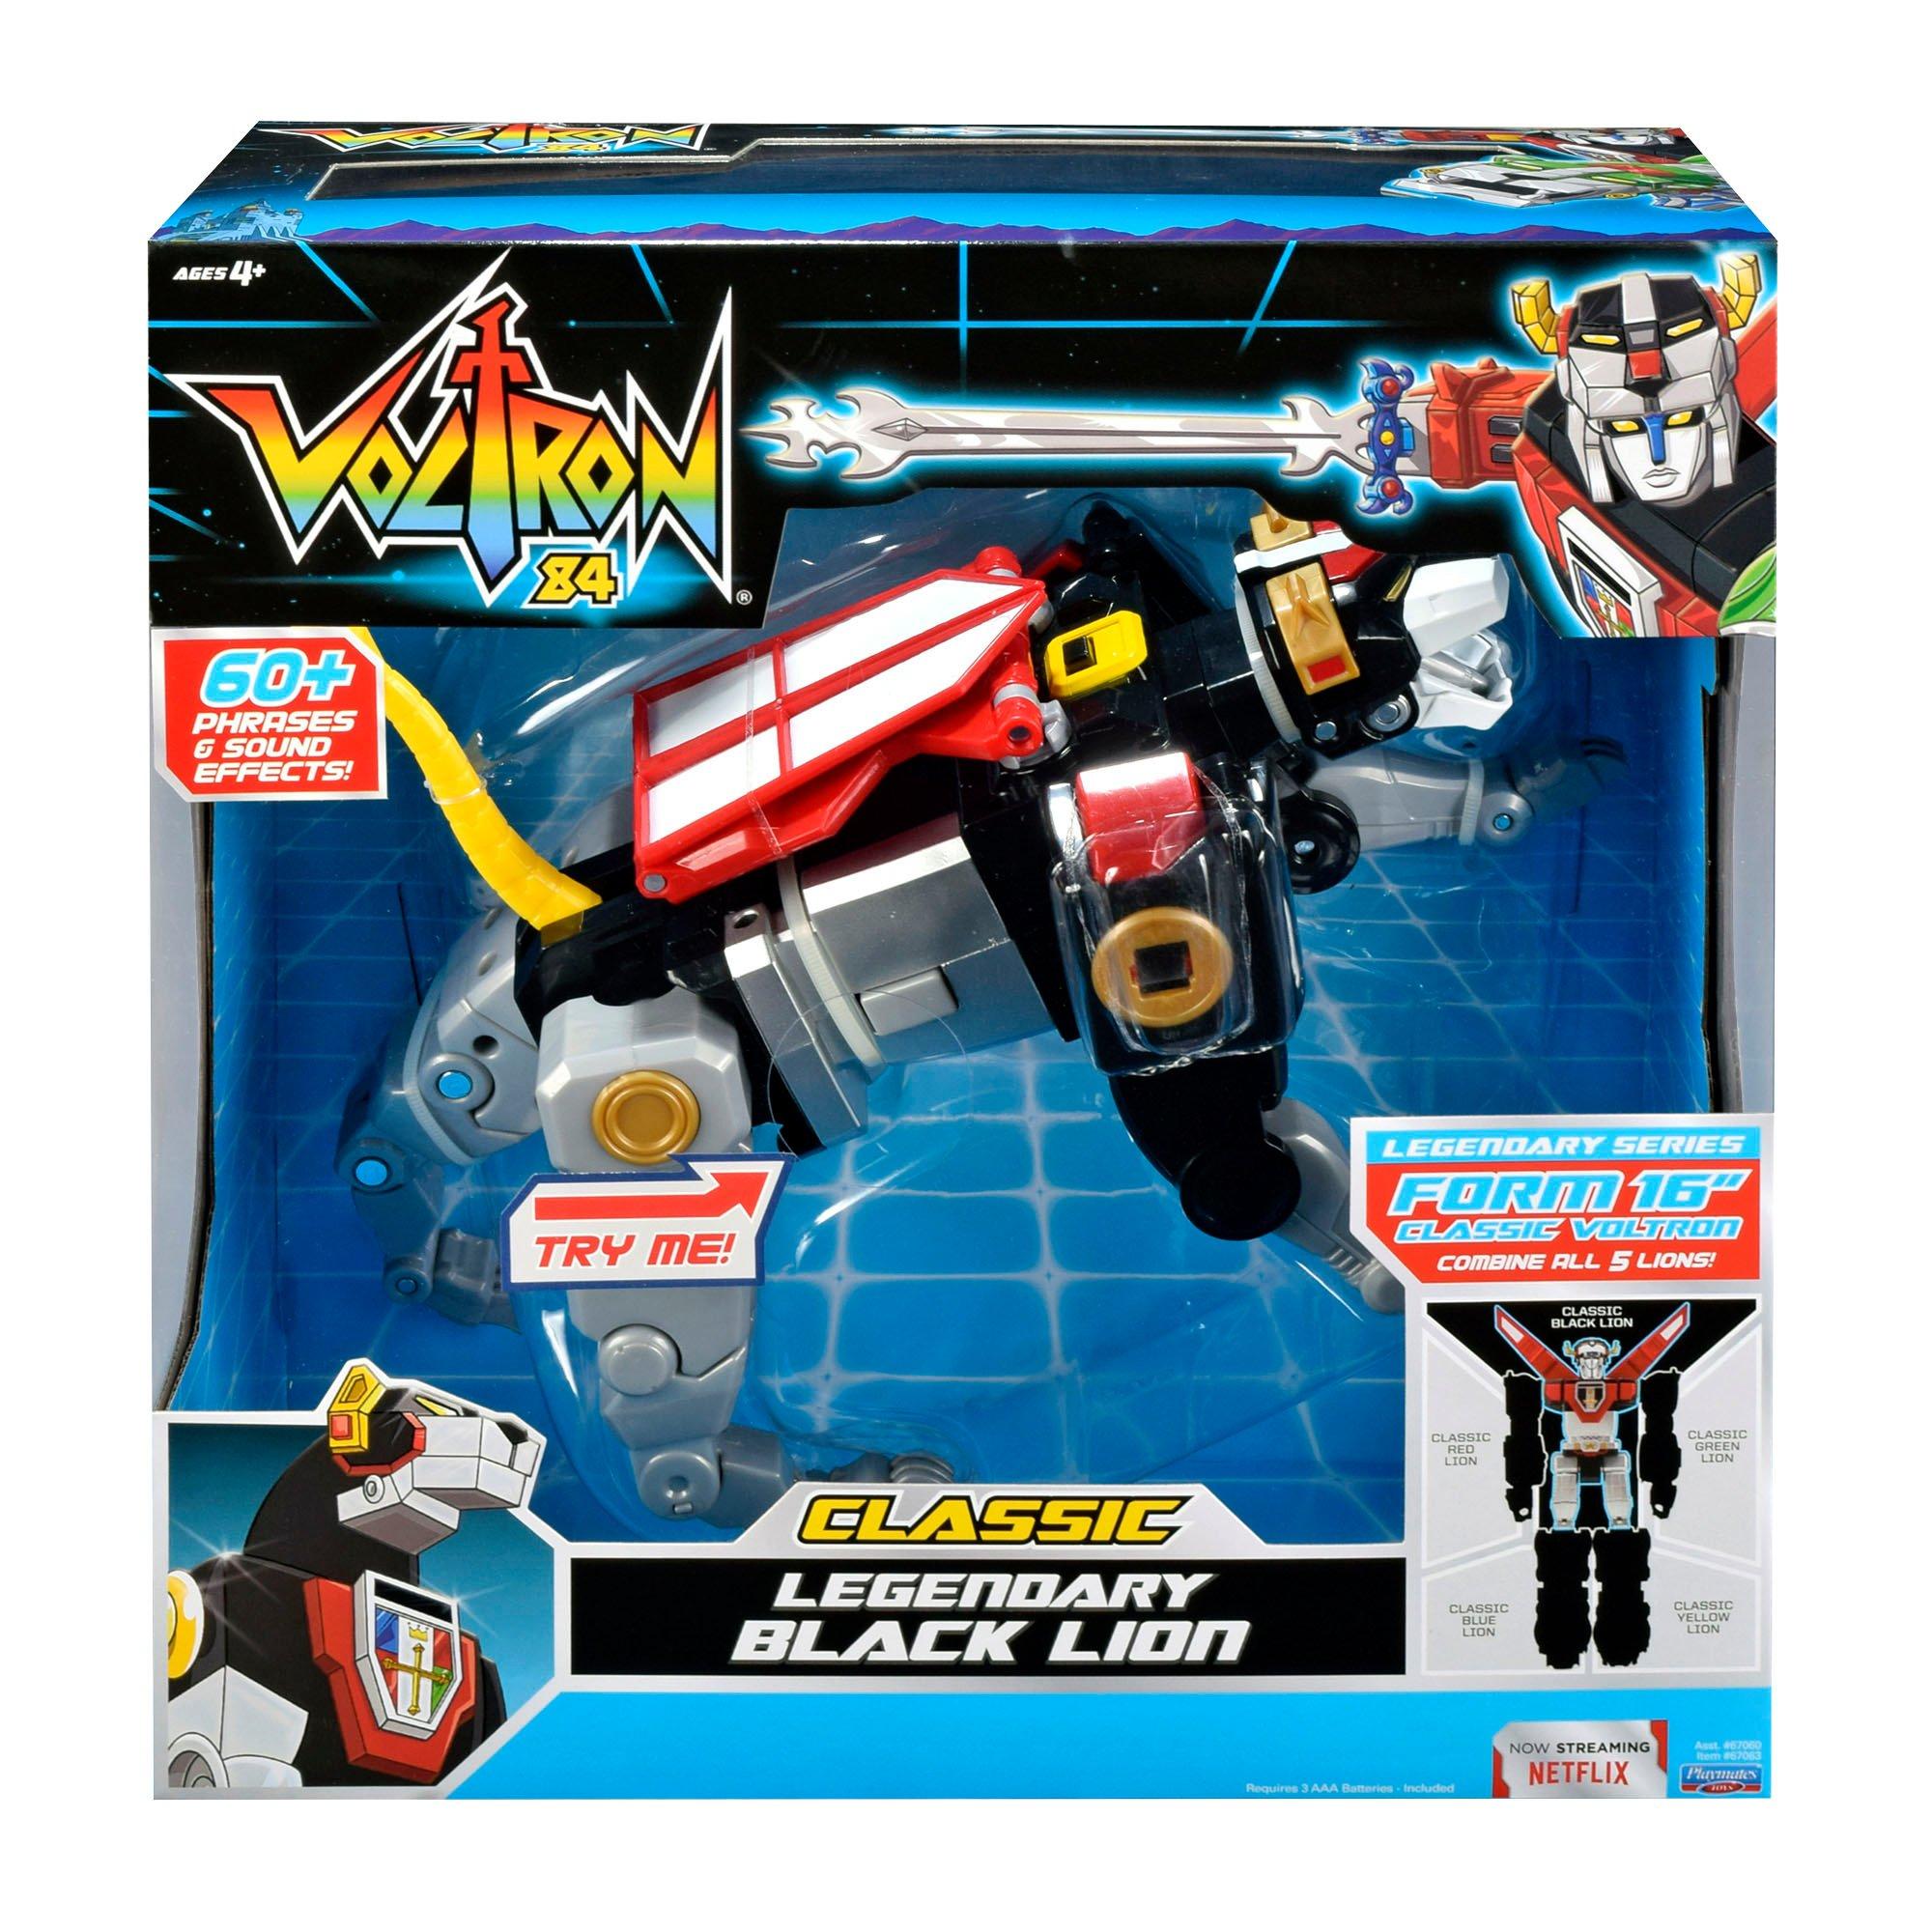 Playmates Voltron Classic Black Lion Action Figure GameStop Exclusive